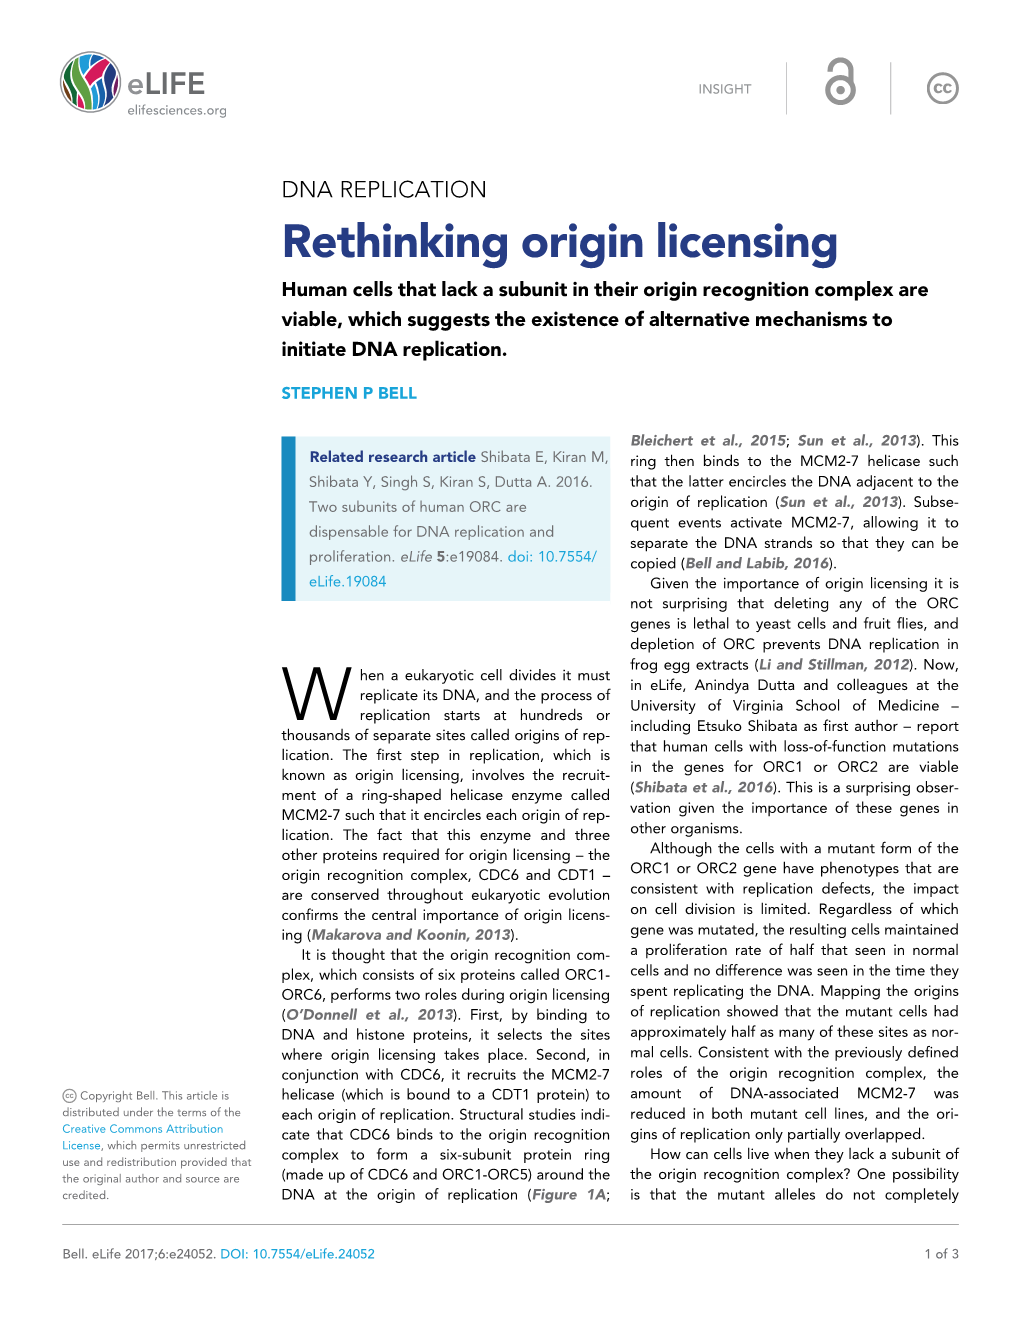 Rethinking Origin Licensing